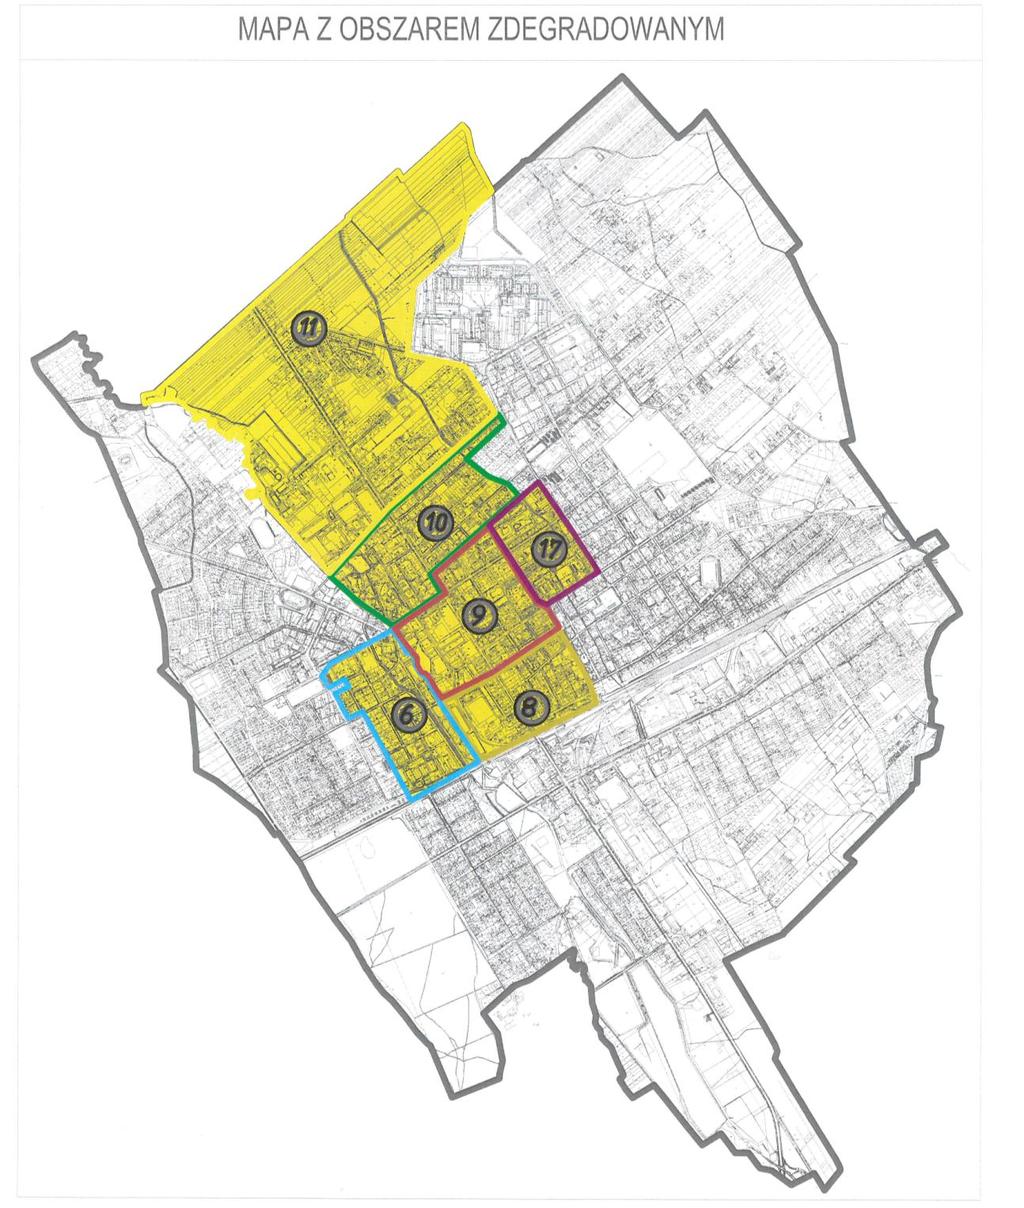 Propozycja obszaru zdegradowanego w ramach Lokalnego Programu Rewitalizacji Miasta Żyrardowa obszar zdegradowany okręg powierzchnia w ha % udziału w powierzchni miasta mieszkańcy 6 30,77 2,14%